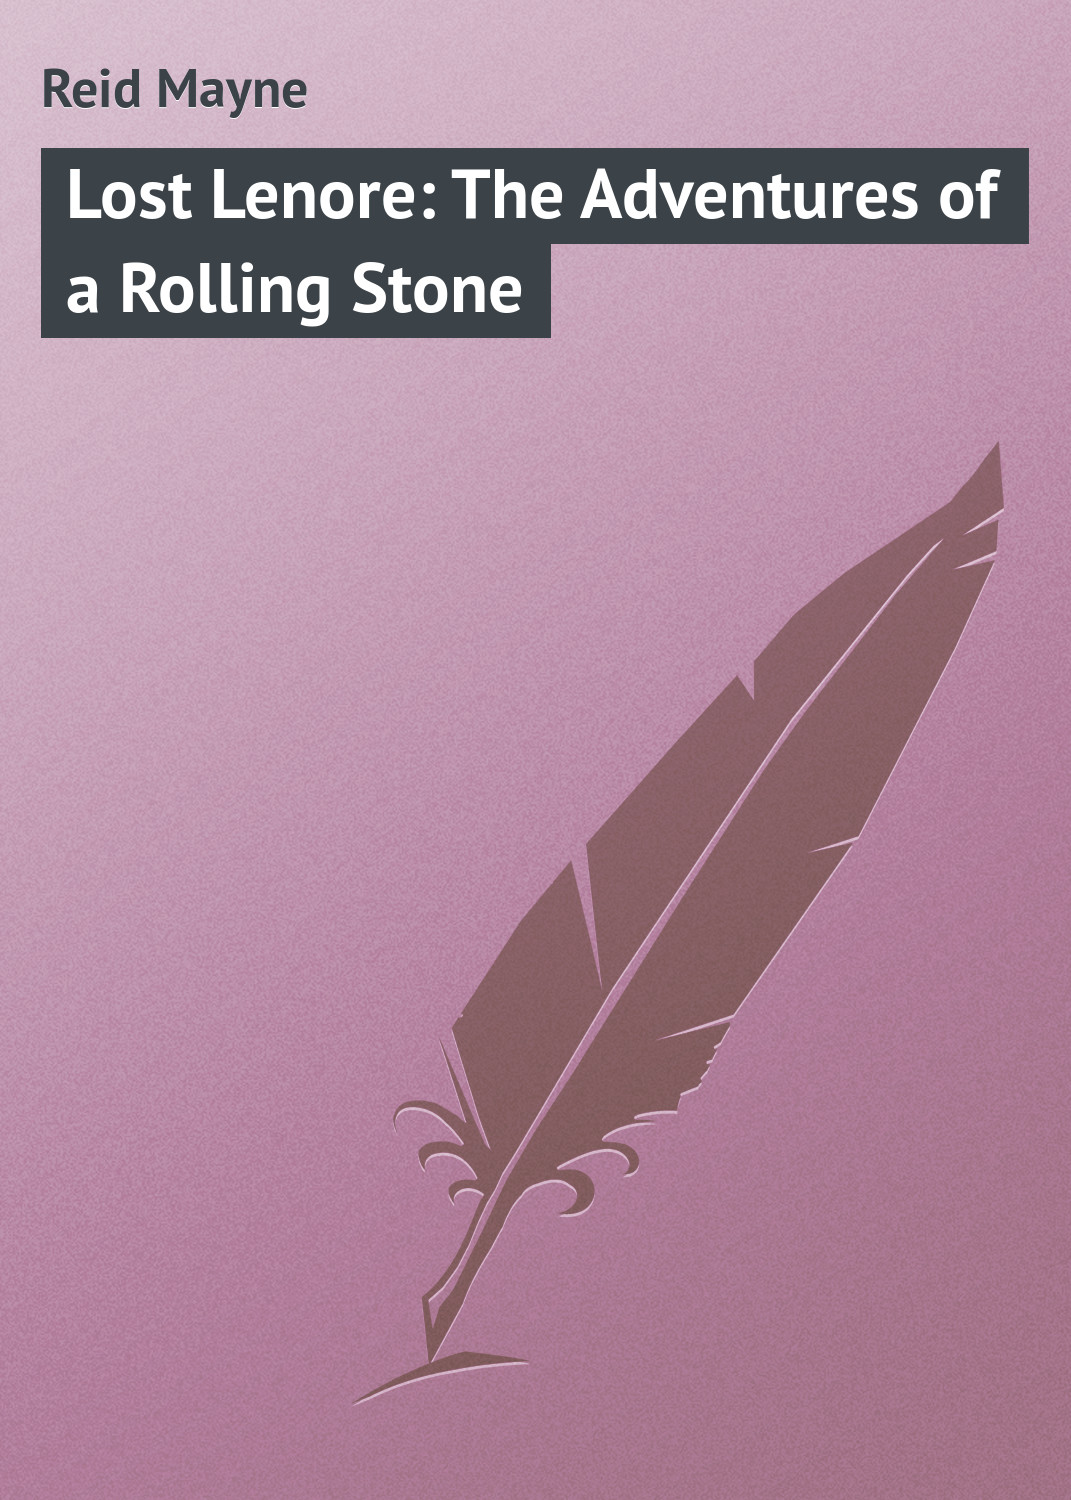 Книга Lost Lenore: The Adventures of a Rolling Stone из серии , созданная Mayne Reid, может относится к жанру Зарубежная классика. Стоимость электронной книги Lost Lenore: The Adventures of a Rolling Stone с идентификатором 23149579 составляет 5.99 руб.